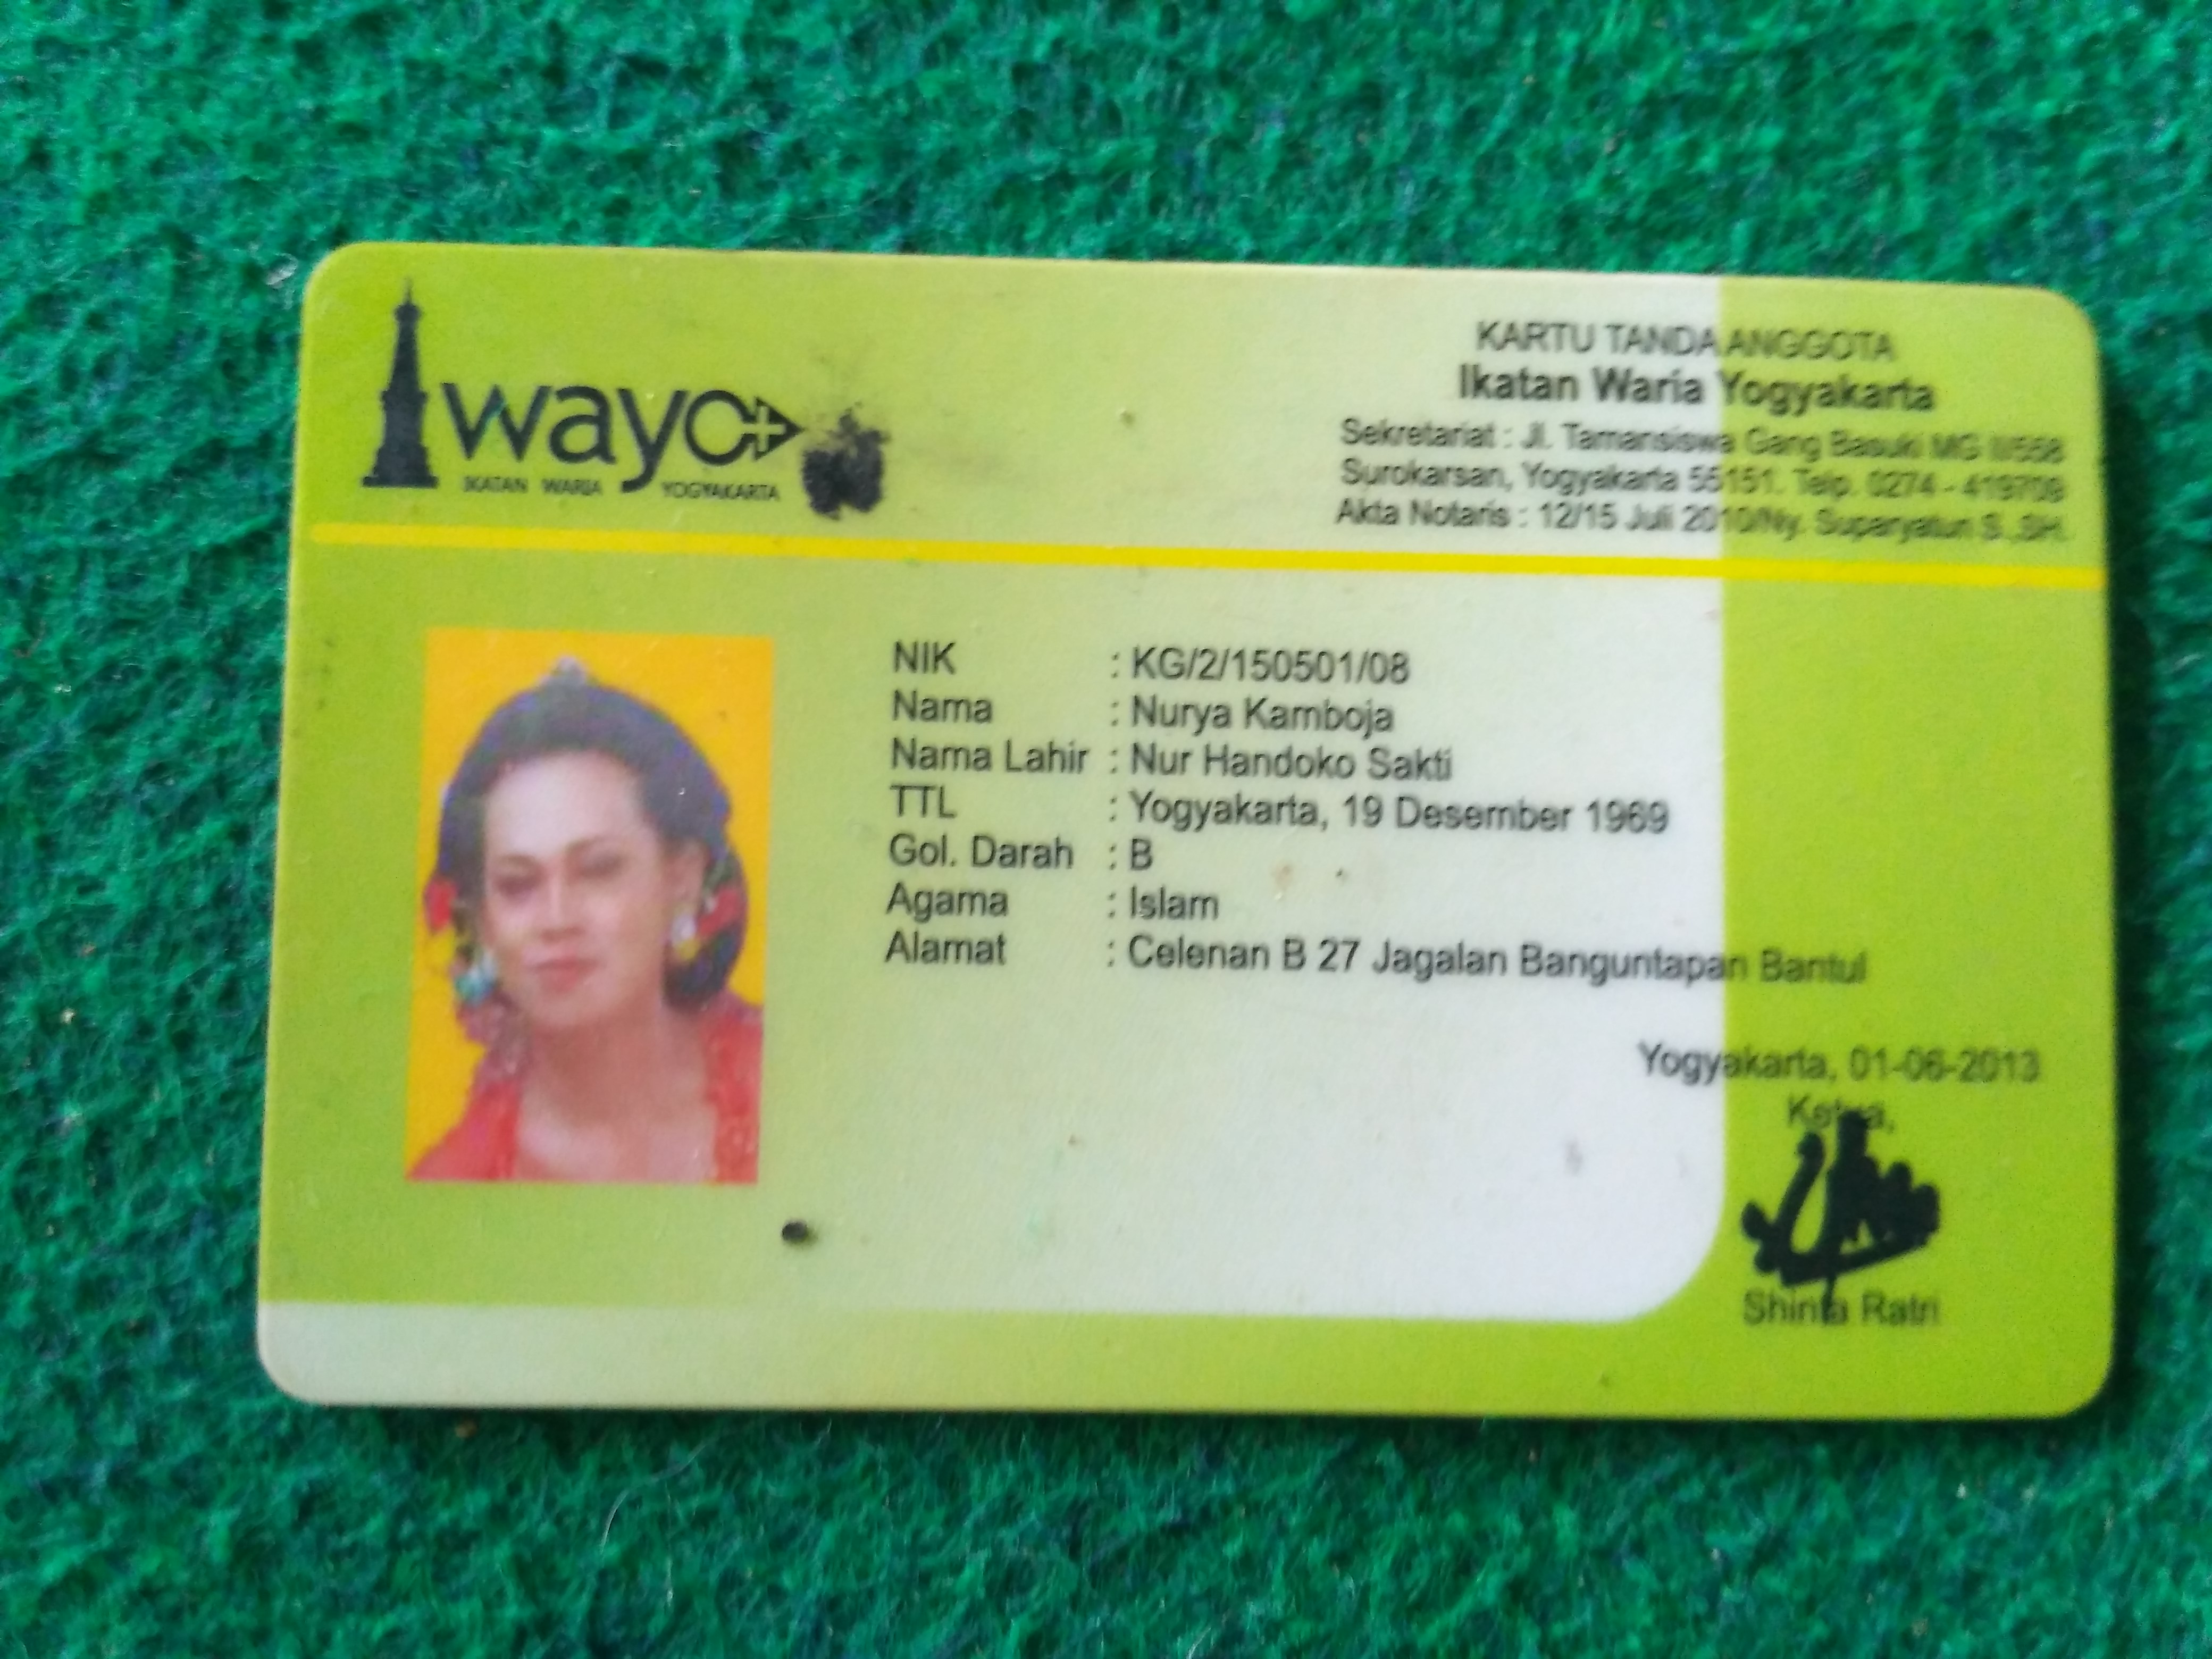 "kartu identitas keanggotaan iwayo.sumber:dokumentasi sendiri